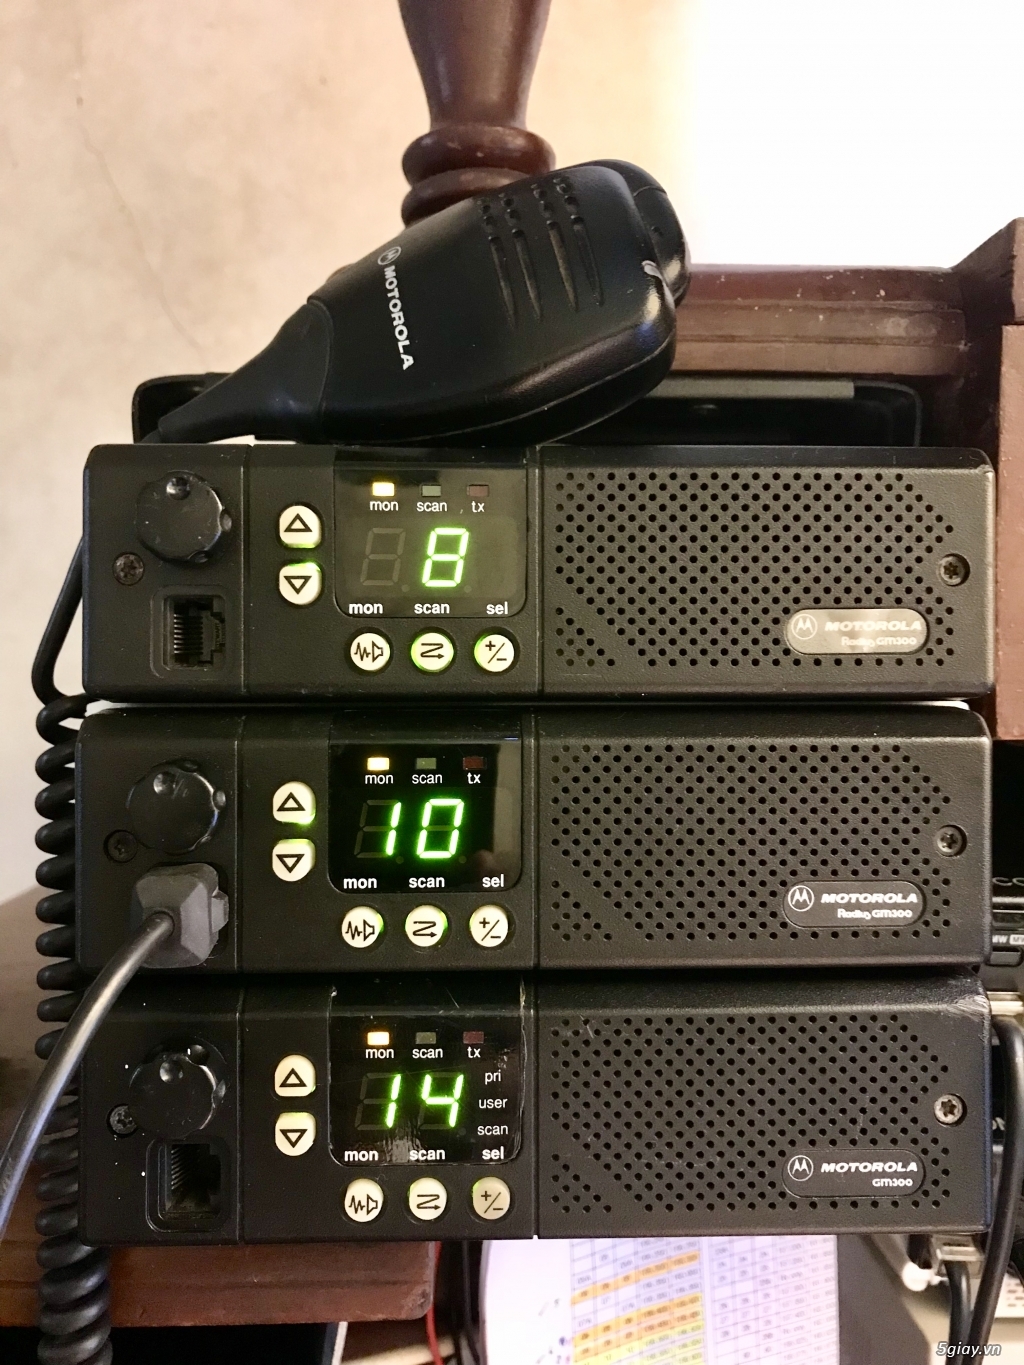 Cần bán: bộ đàm trạm motorola GM300 VHF - free lập trình tần số - 2